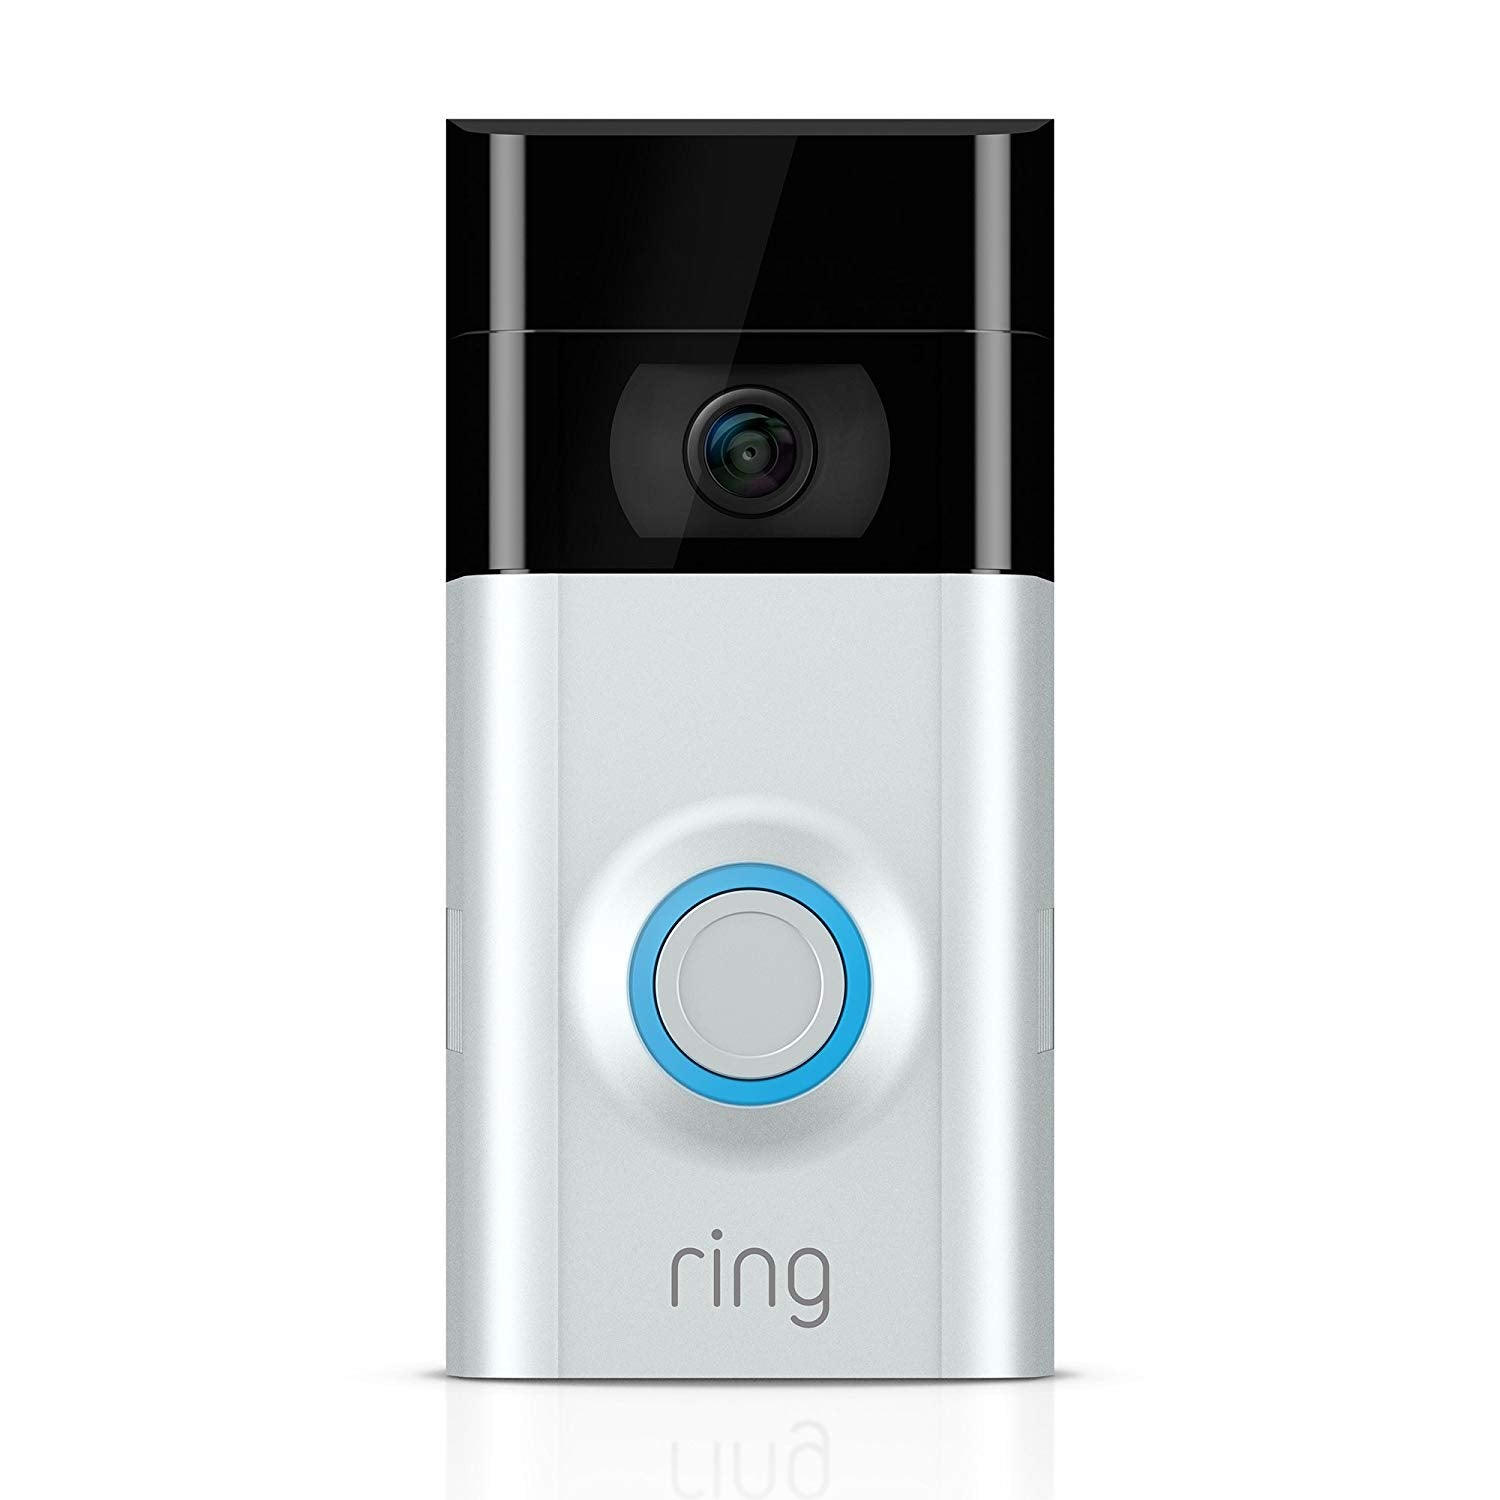 Ring Video Doorbell 2, 1080HD Video, WiFi Enabled, Works w/ Alexa - Satin Nickel (Certified Refurbished)